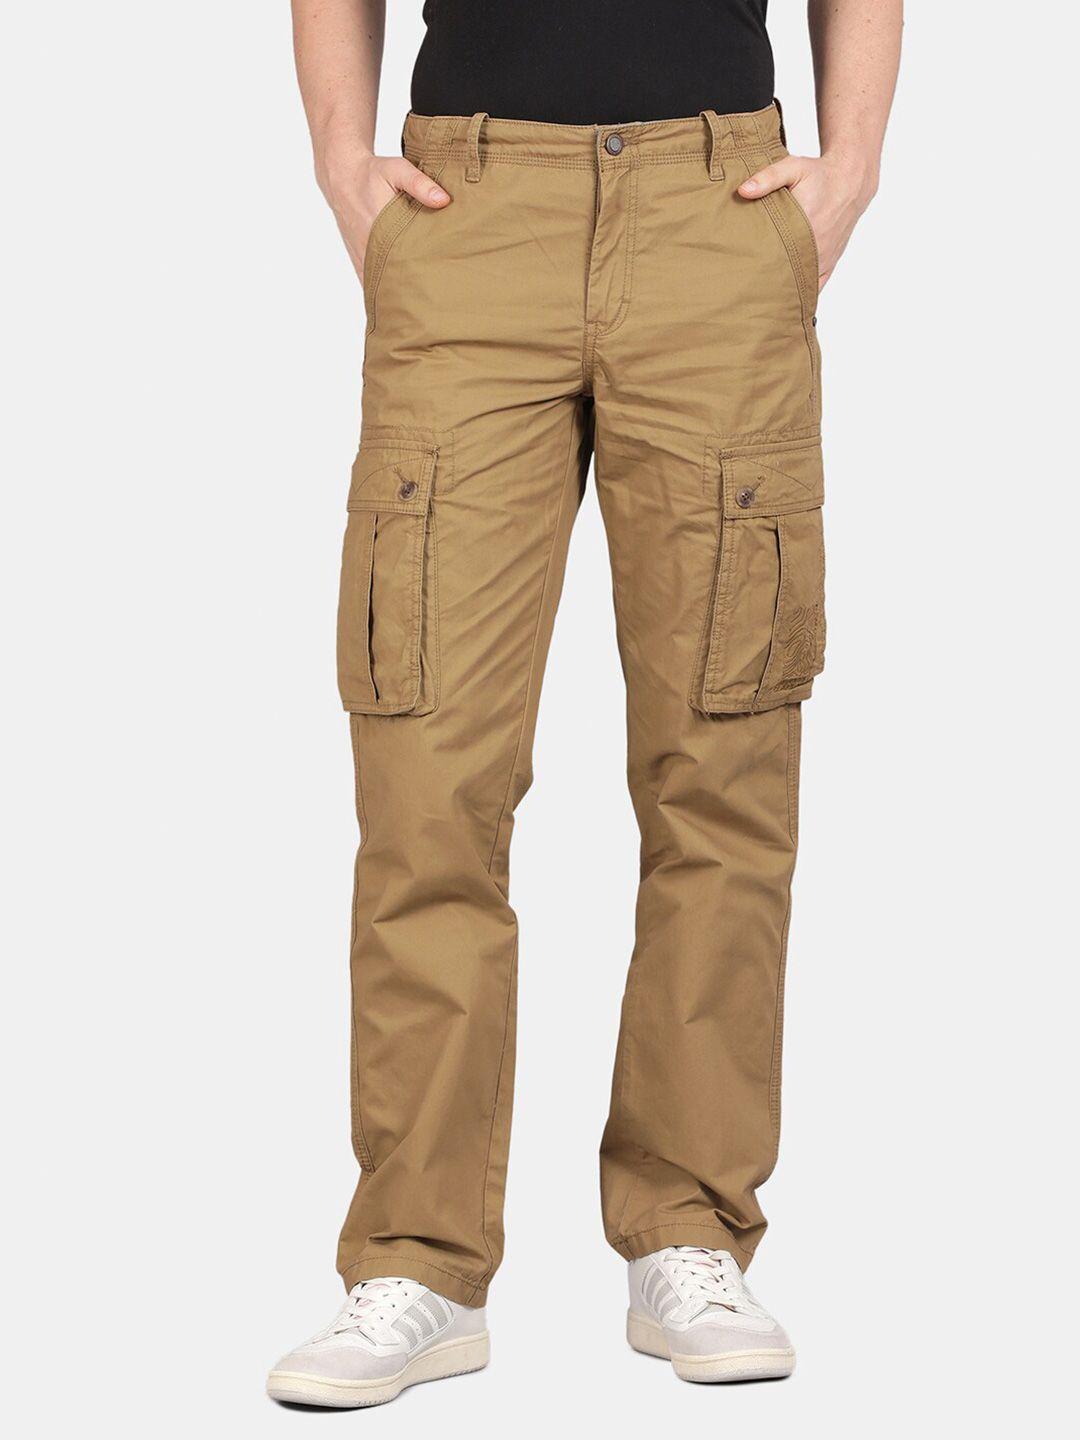 t-base men mid-rise pure cotton cargos trouser